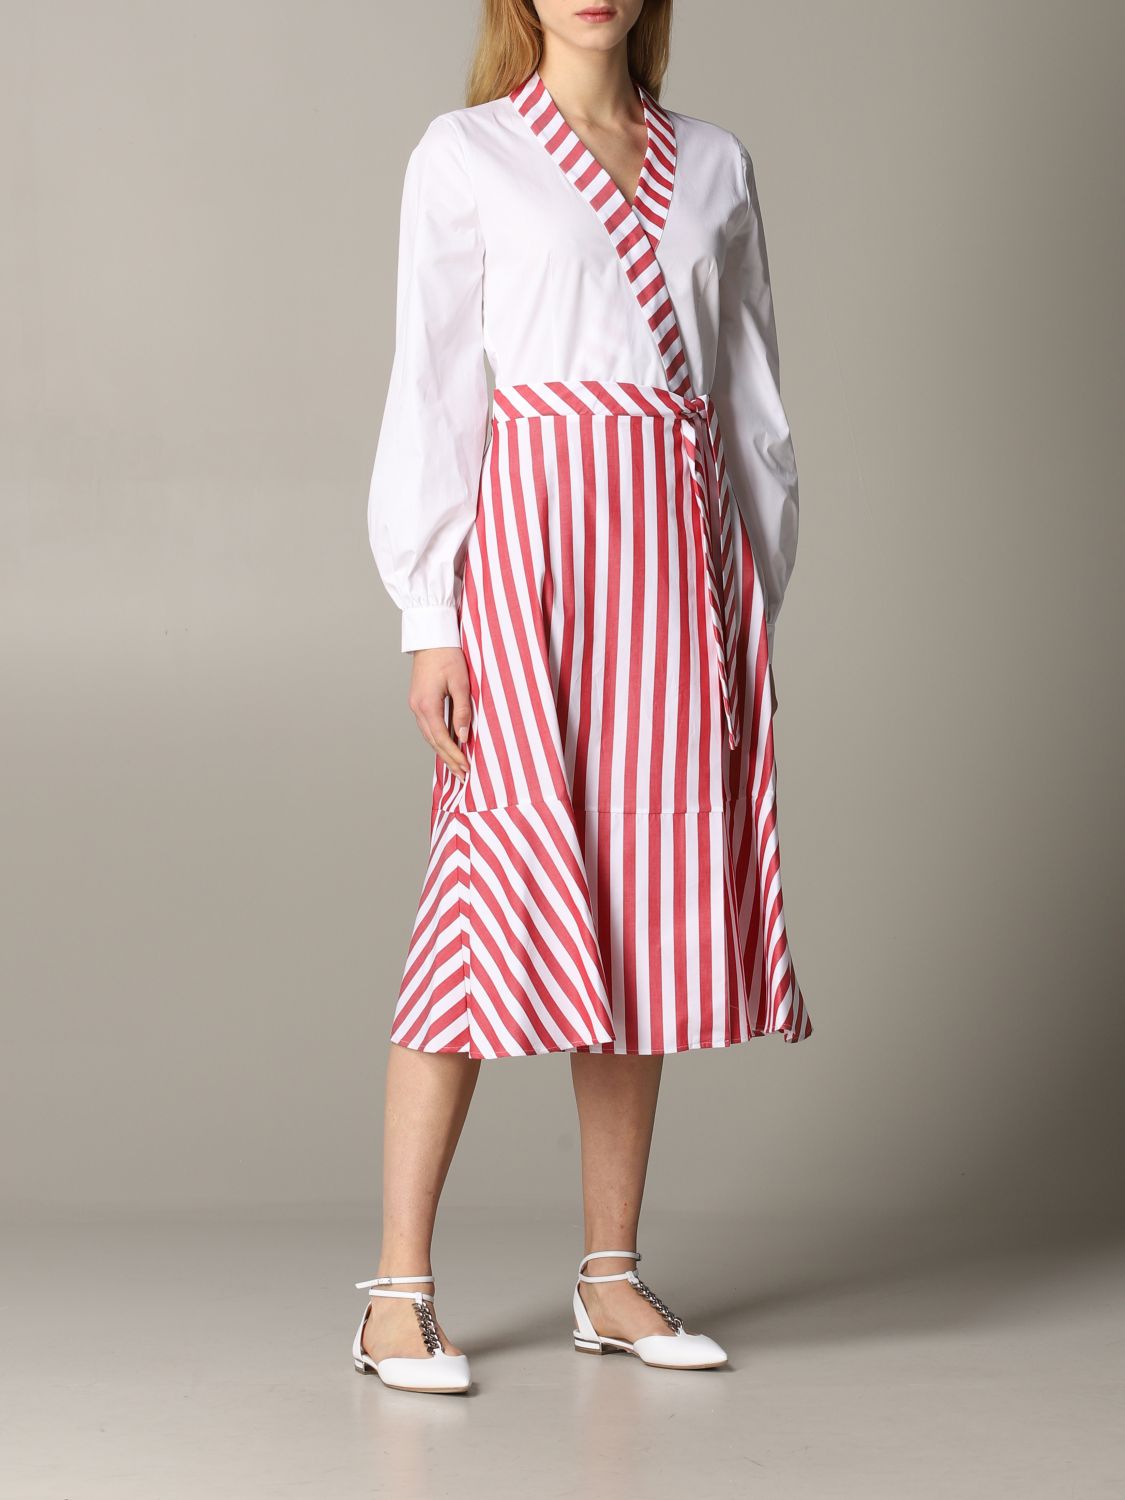 striped skirt dress